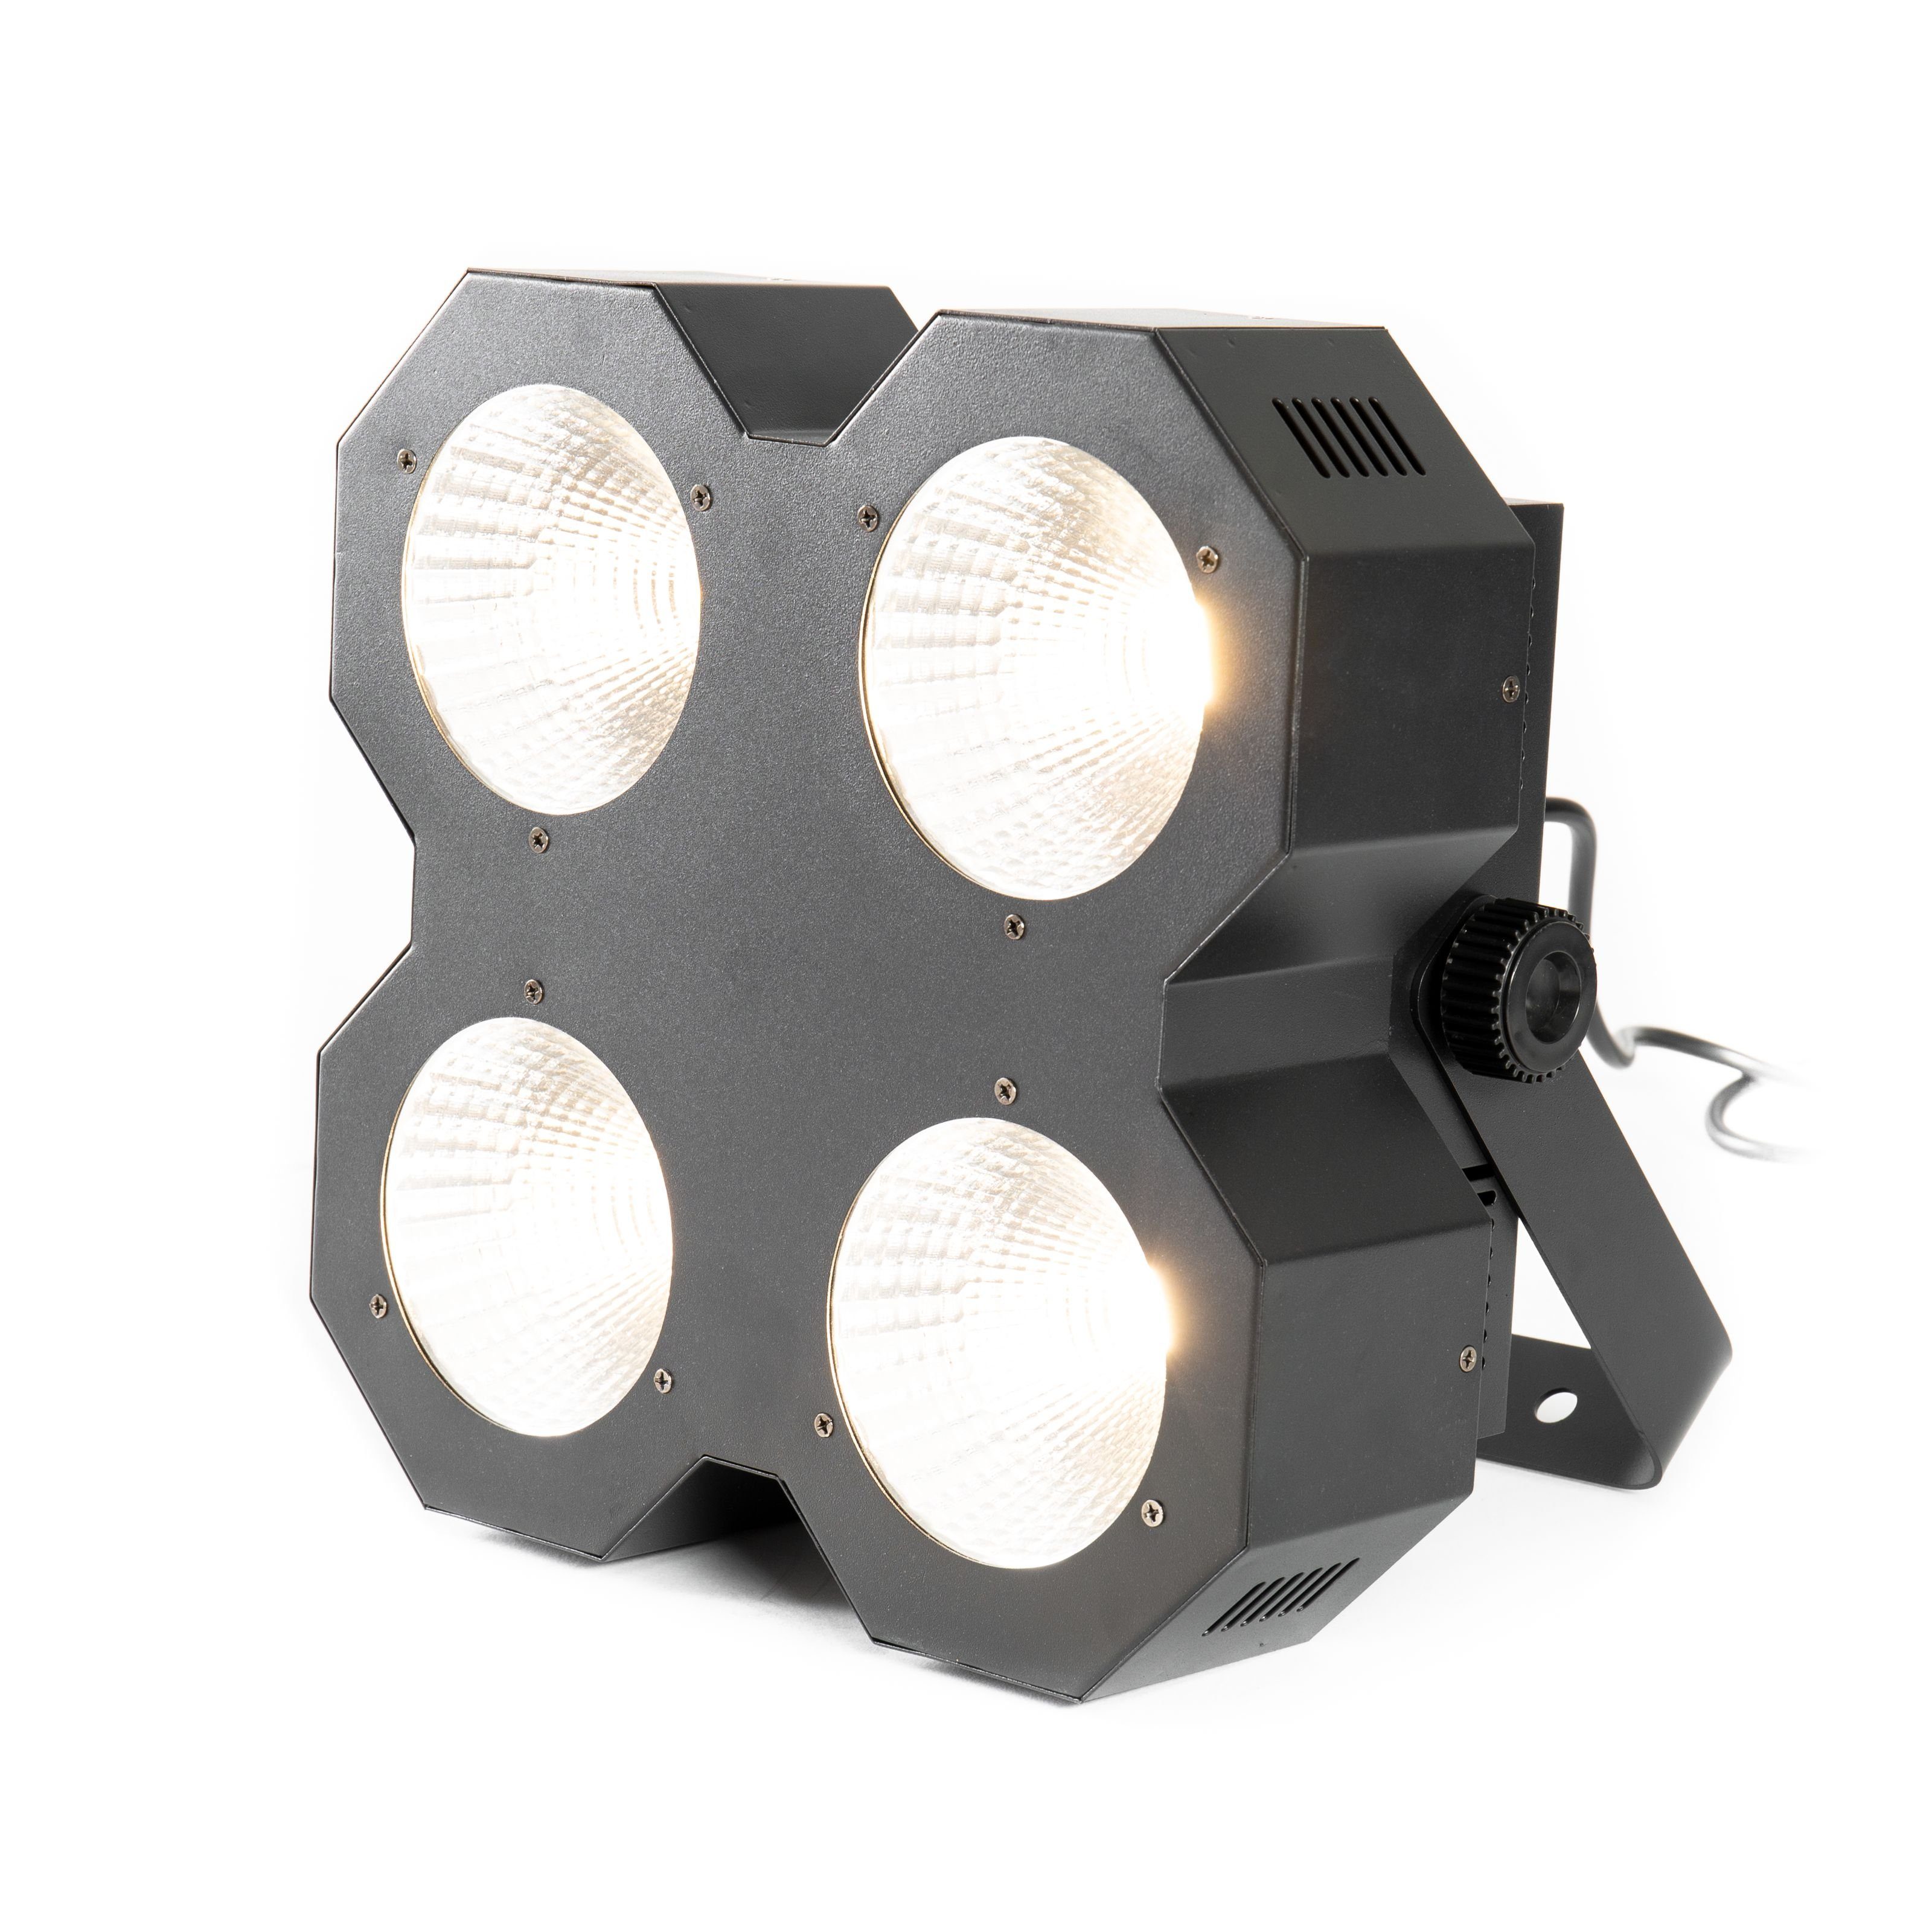 Blinder LED - lightmaXX 4 Blinder Discolicht,